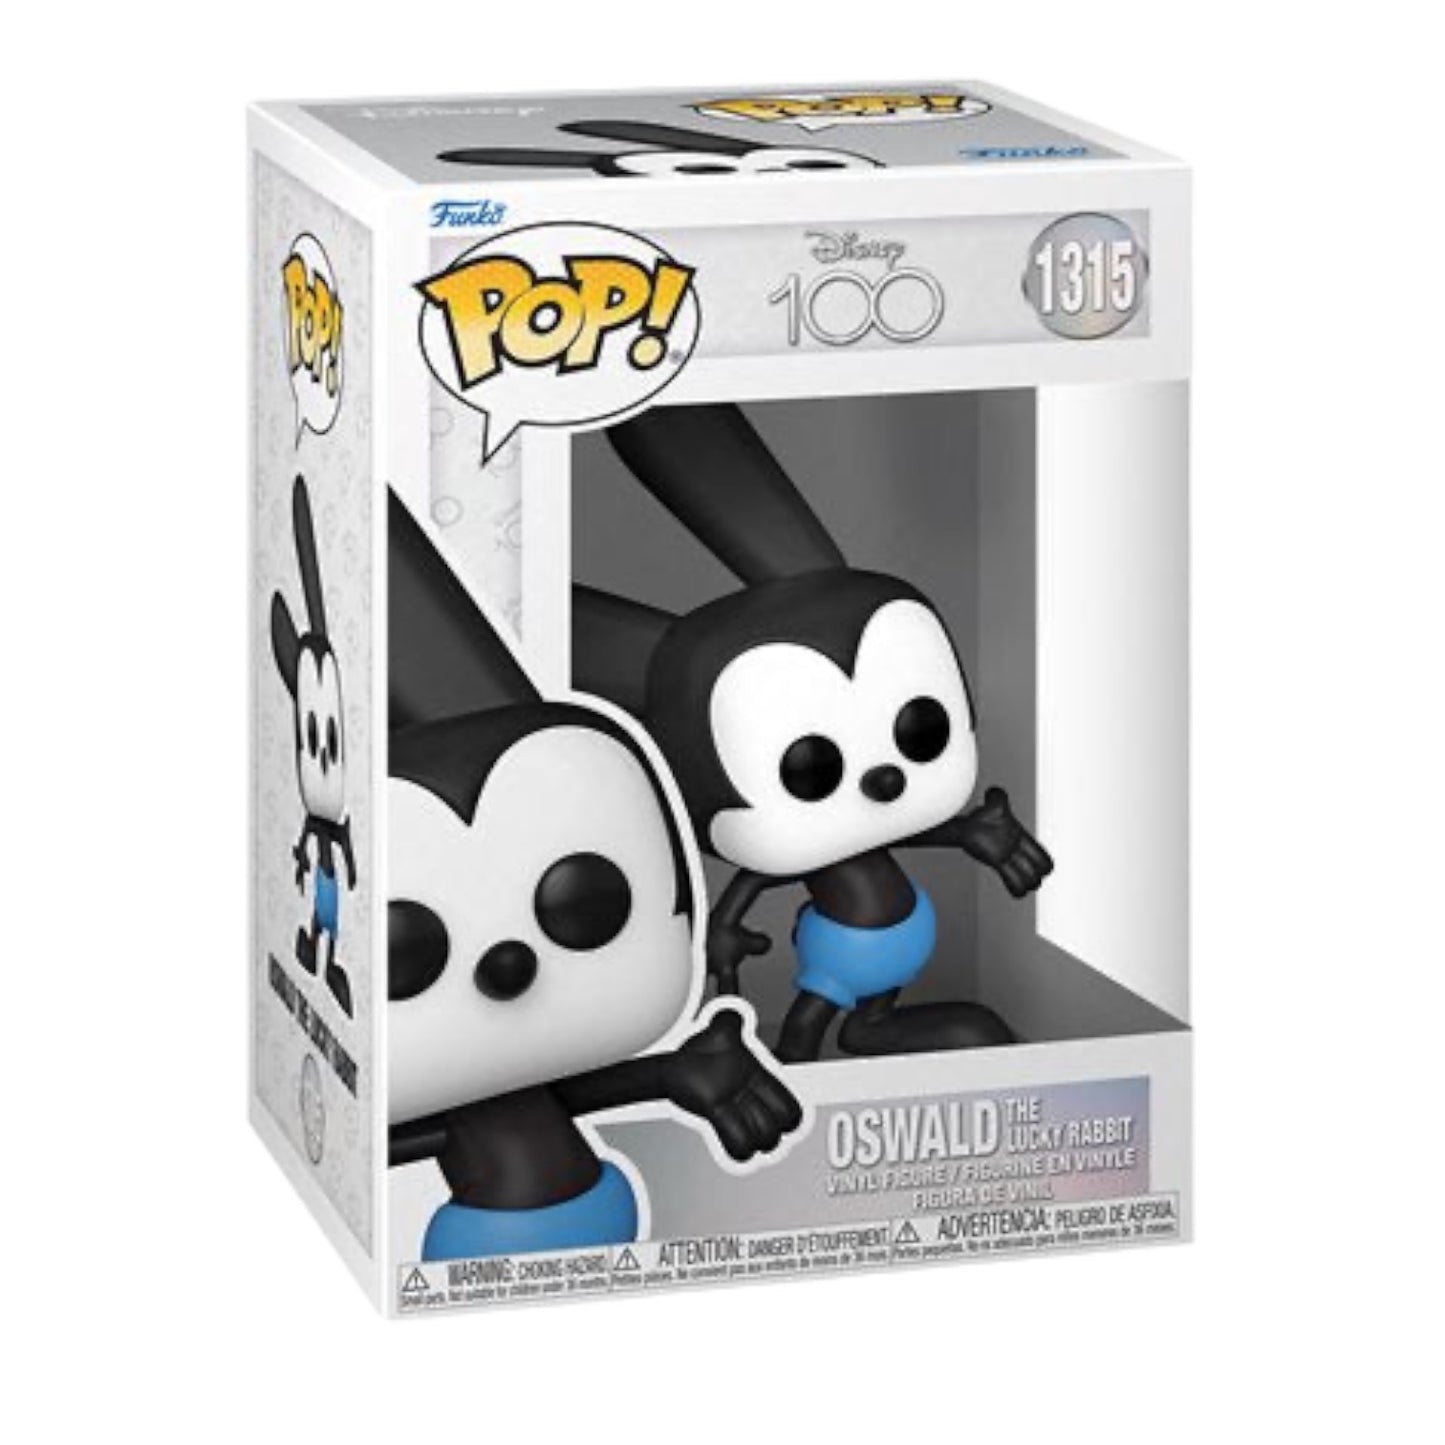 Funko Pop! Disney 100 Oswald 1315